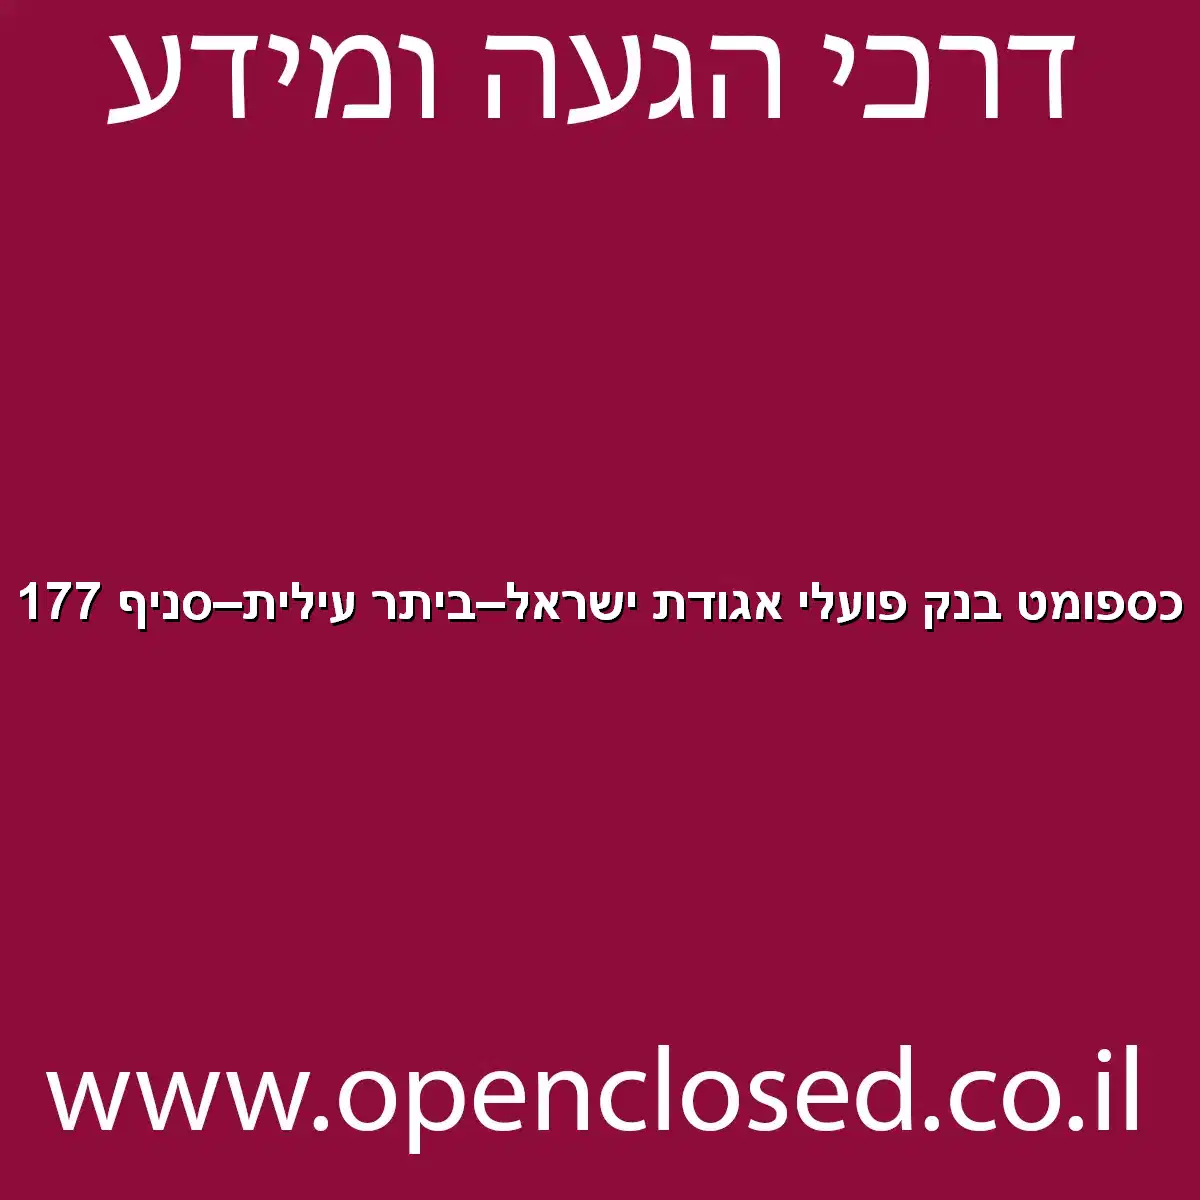 כספומט בנק פועלי אגודת ישראל ביתר עילית סניף 177